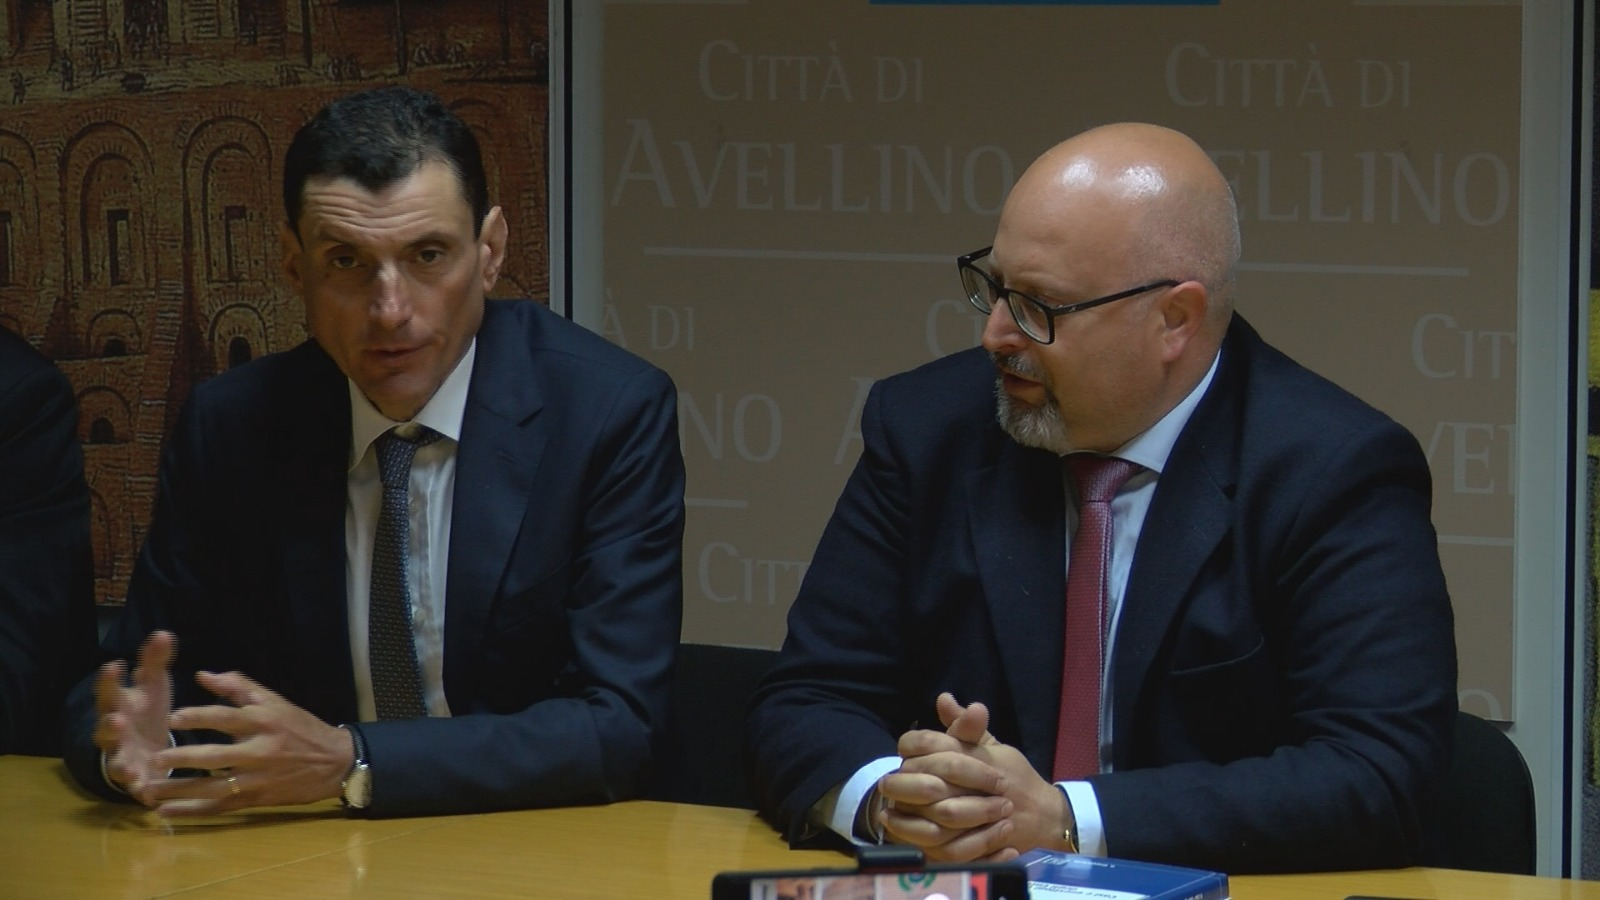 Avellino| Ciampi presenta il nuovo segretario e dice: il mio impegno fino alla fine